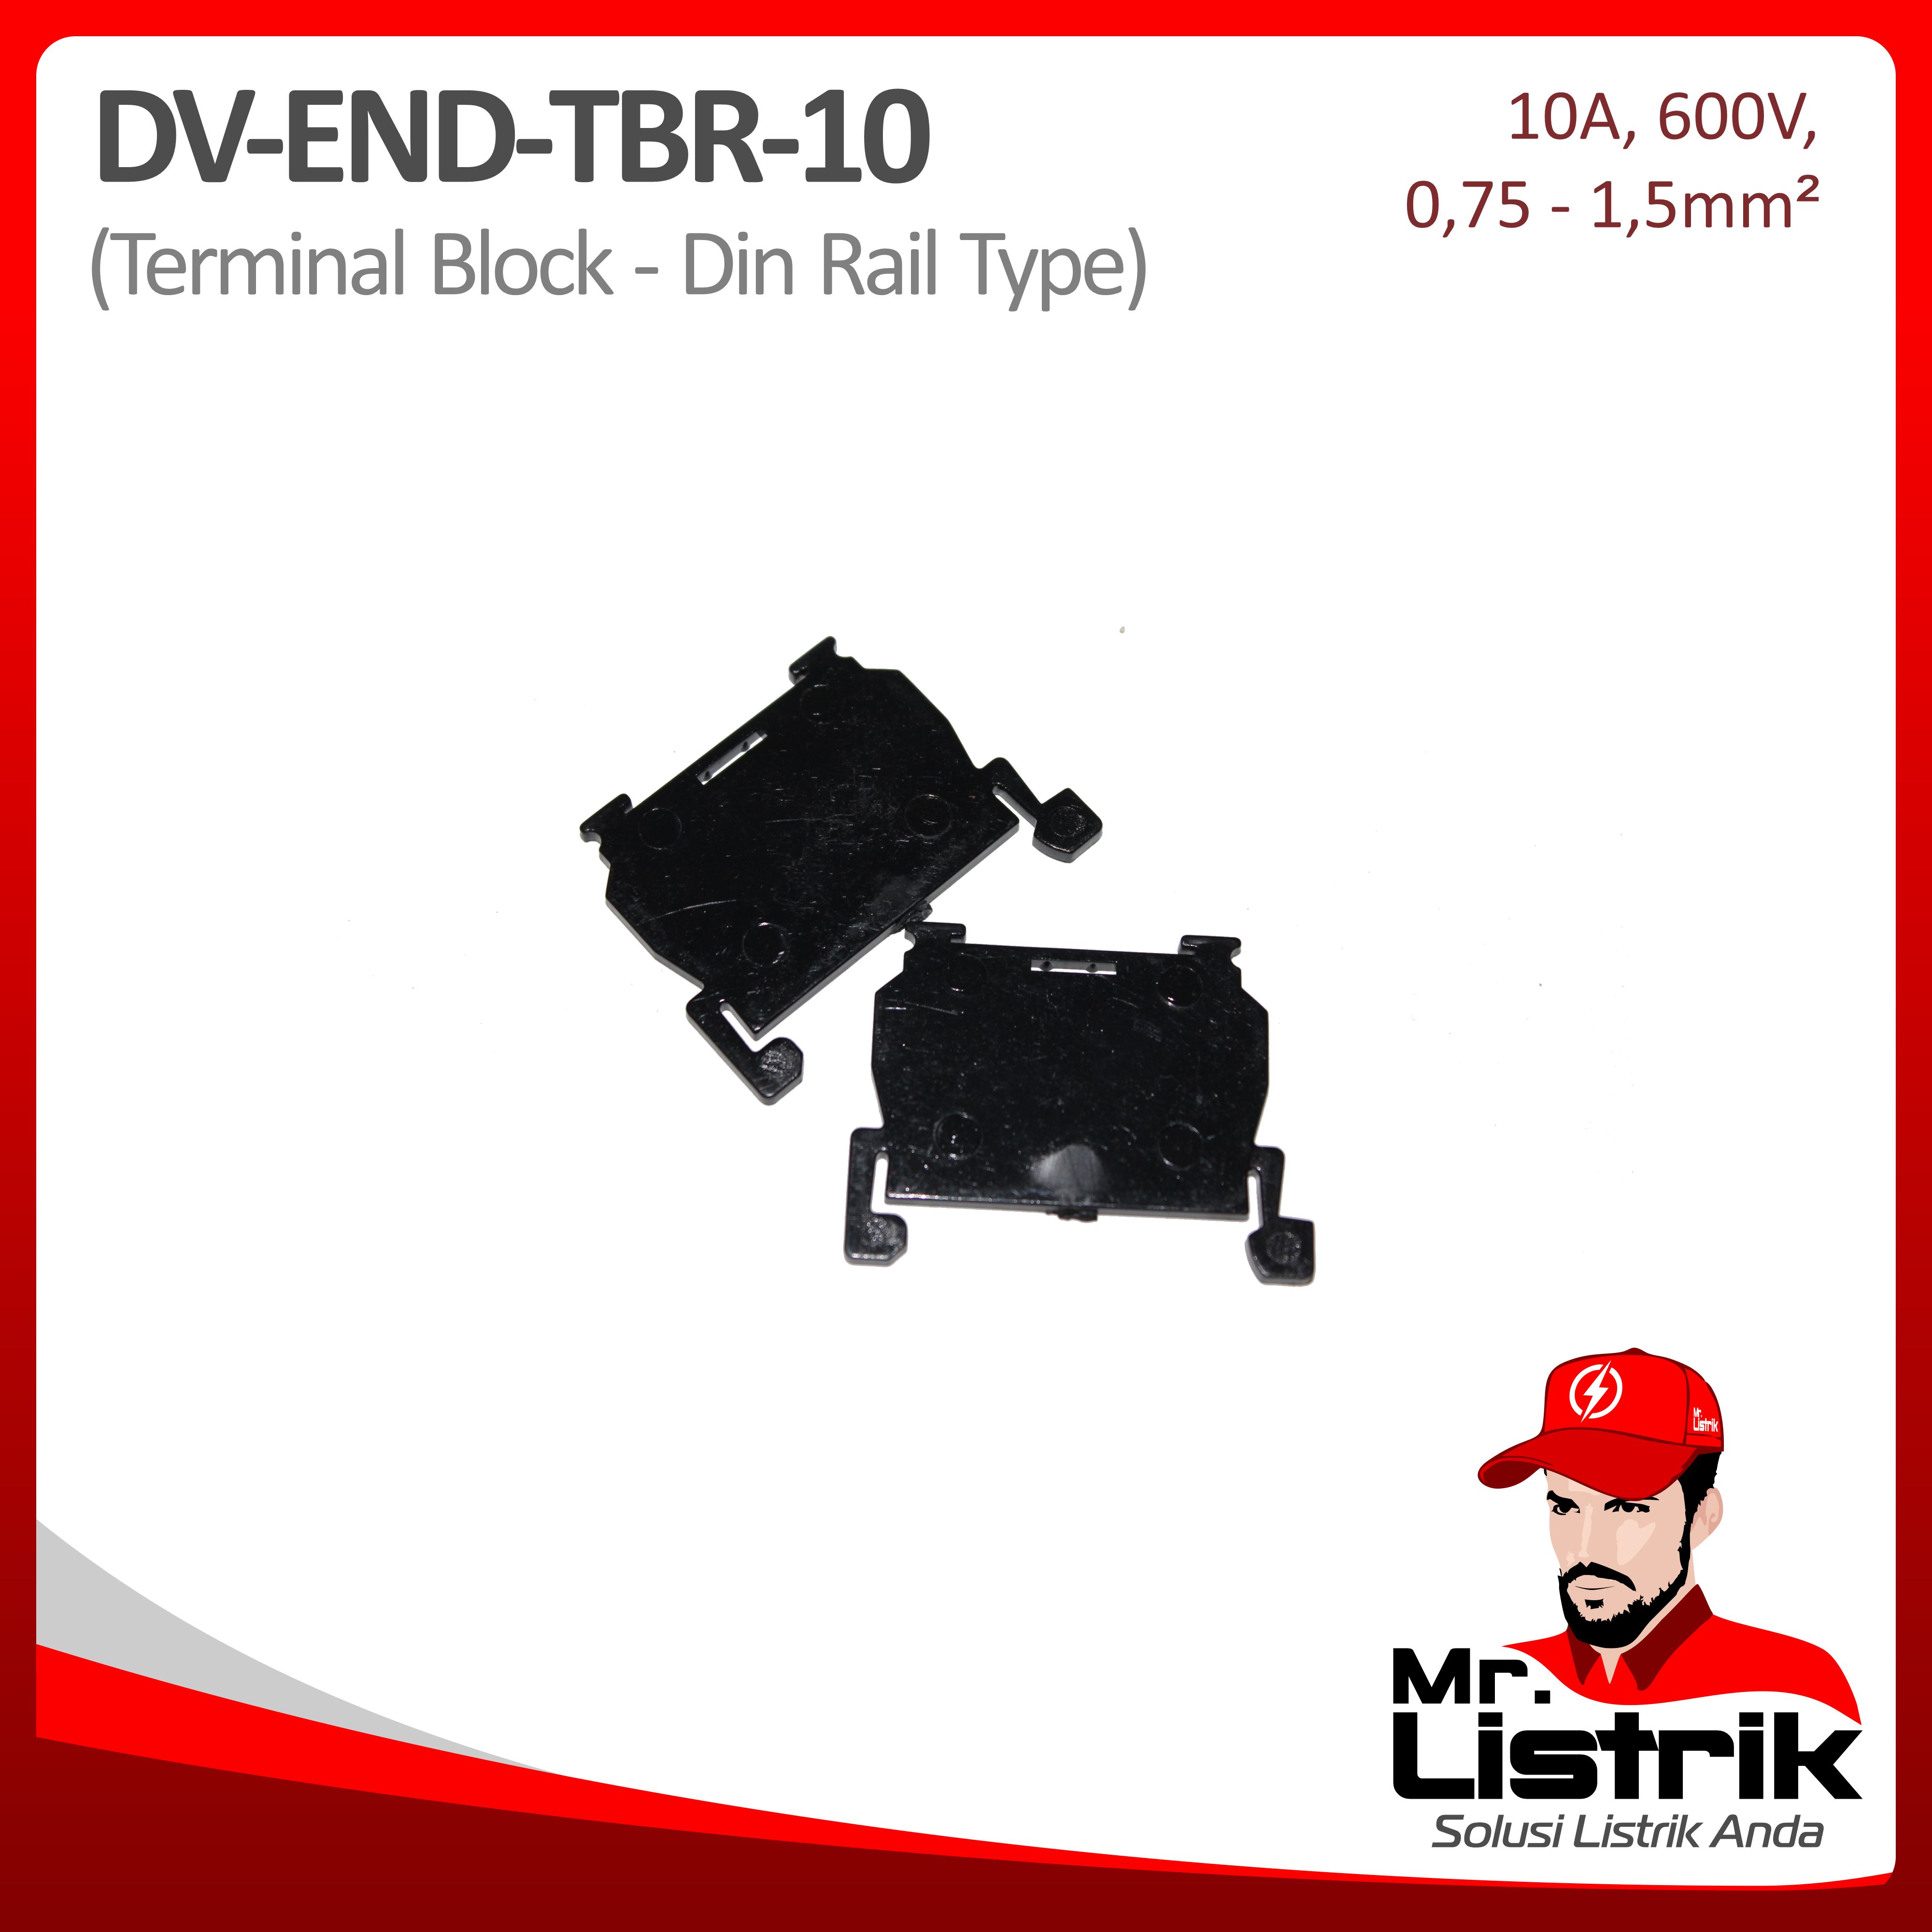 End Terminal Block TBR Series 10A DV End-TBR-10